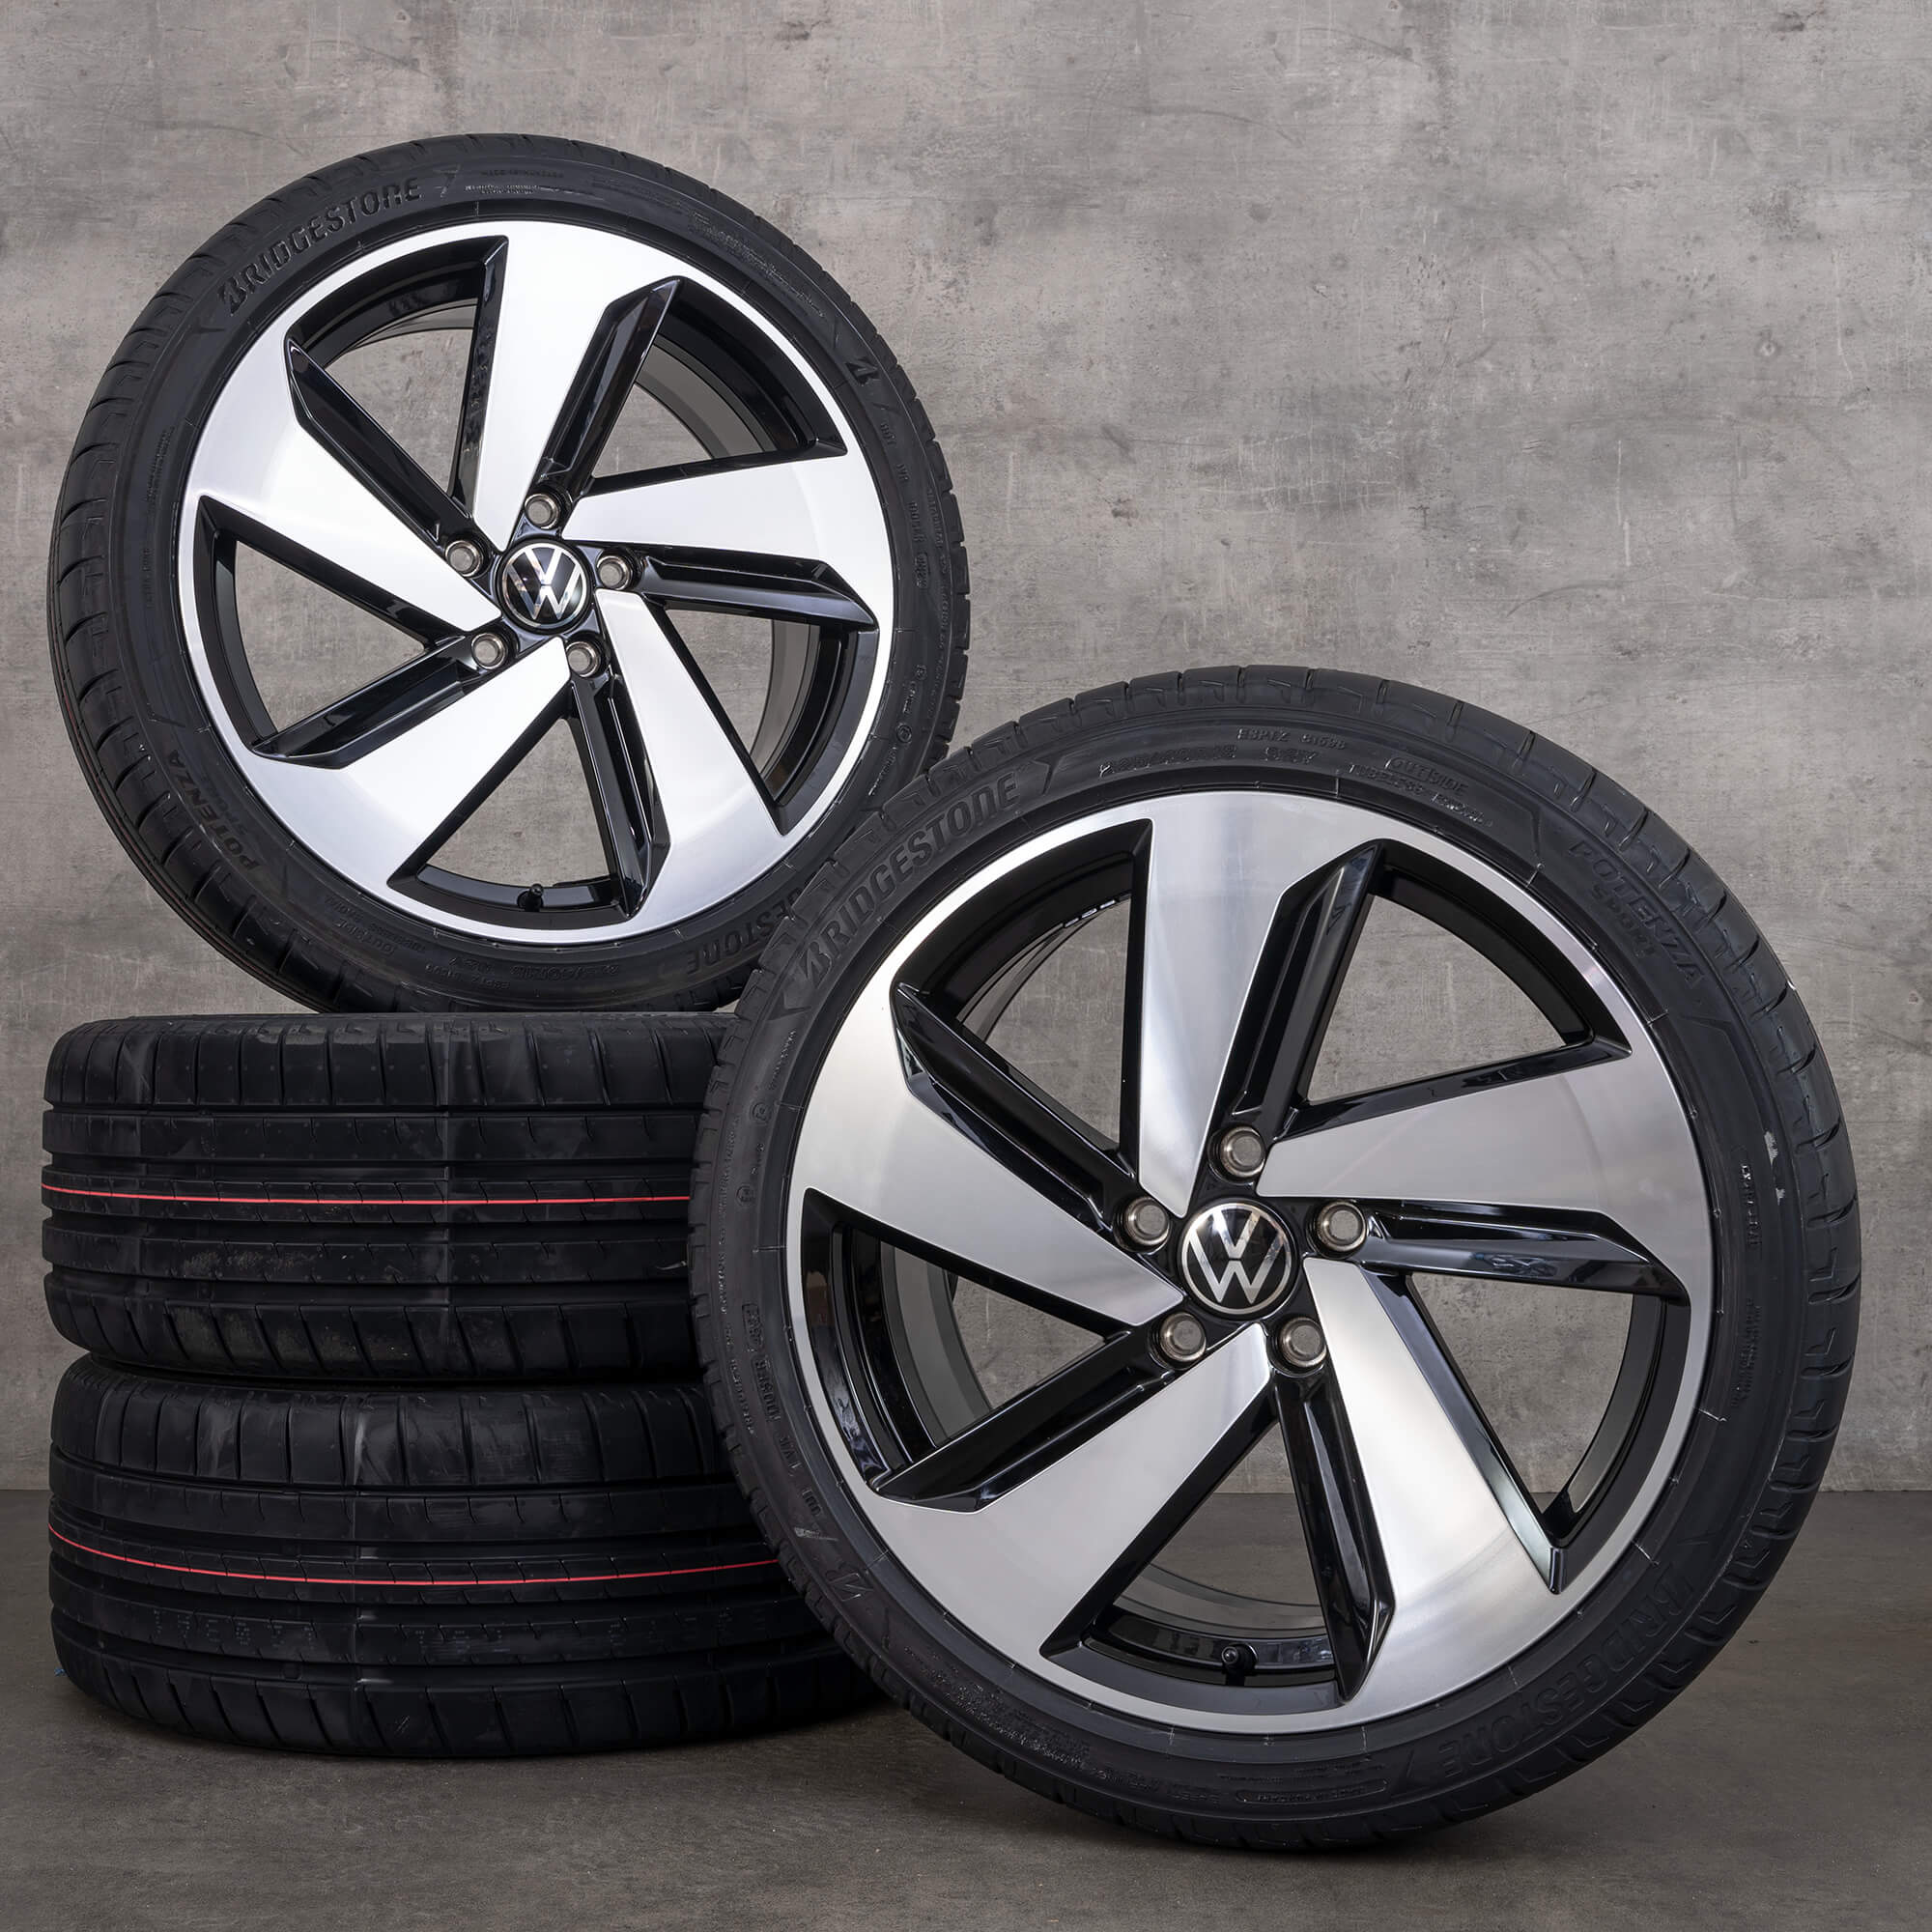 VW Golf 7 jantes Milton Keynes pneus de verão 18 polegadas rodas 5GM601025Q NOVO